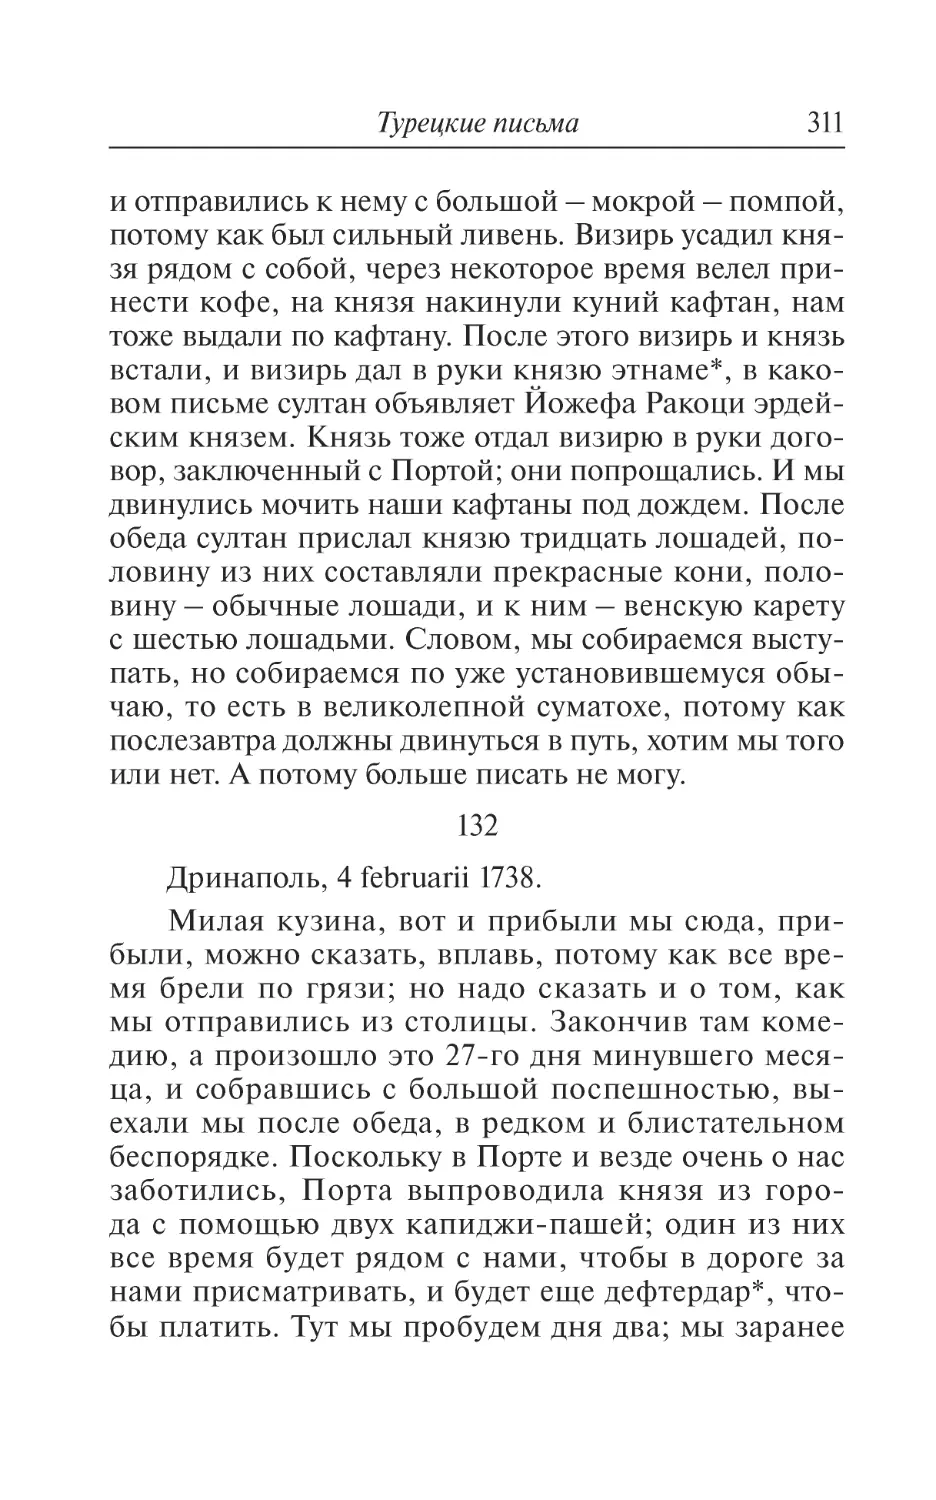 132. Дринаполь, 4 februarii 1738